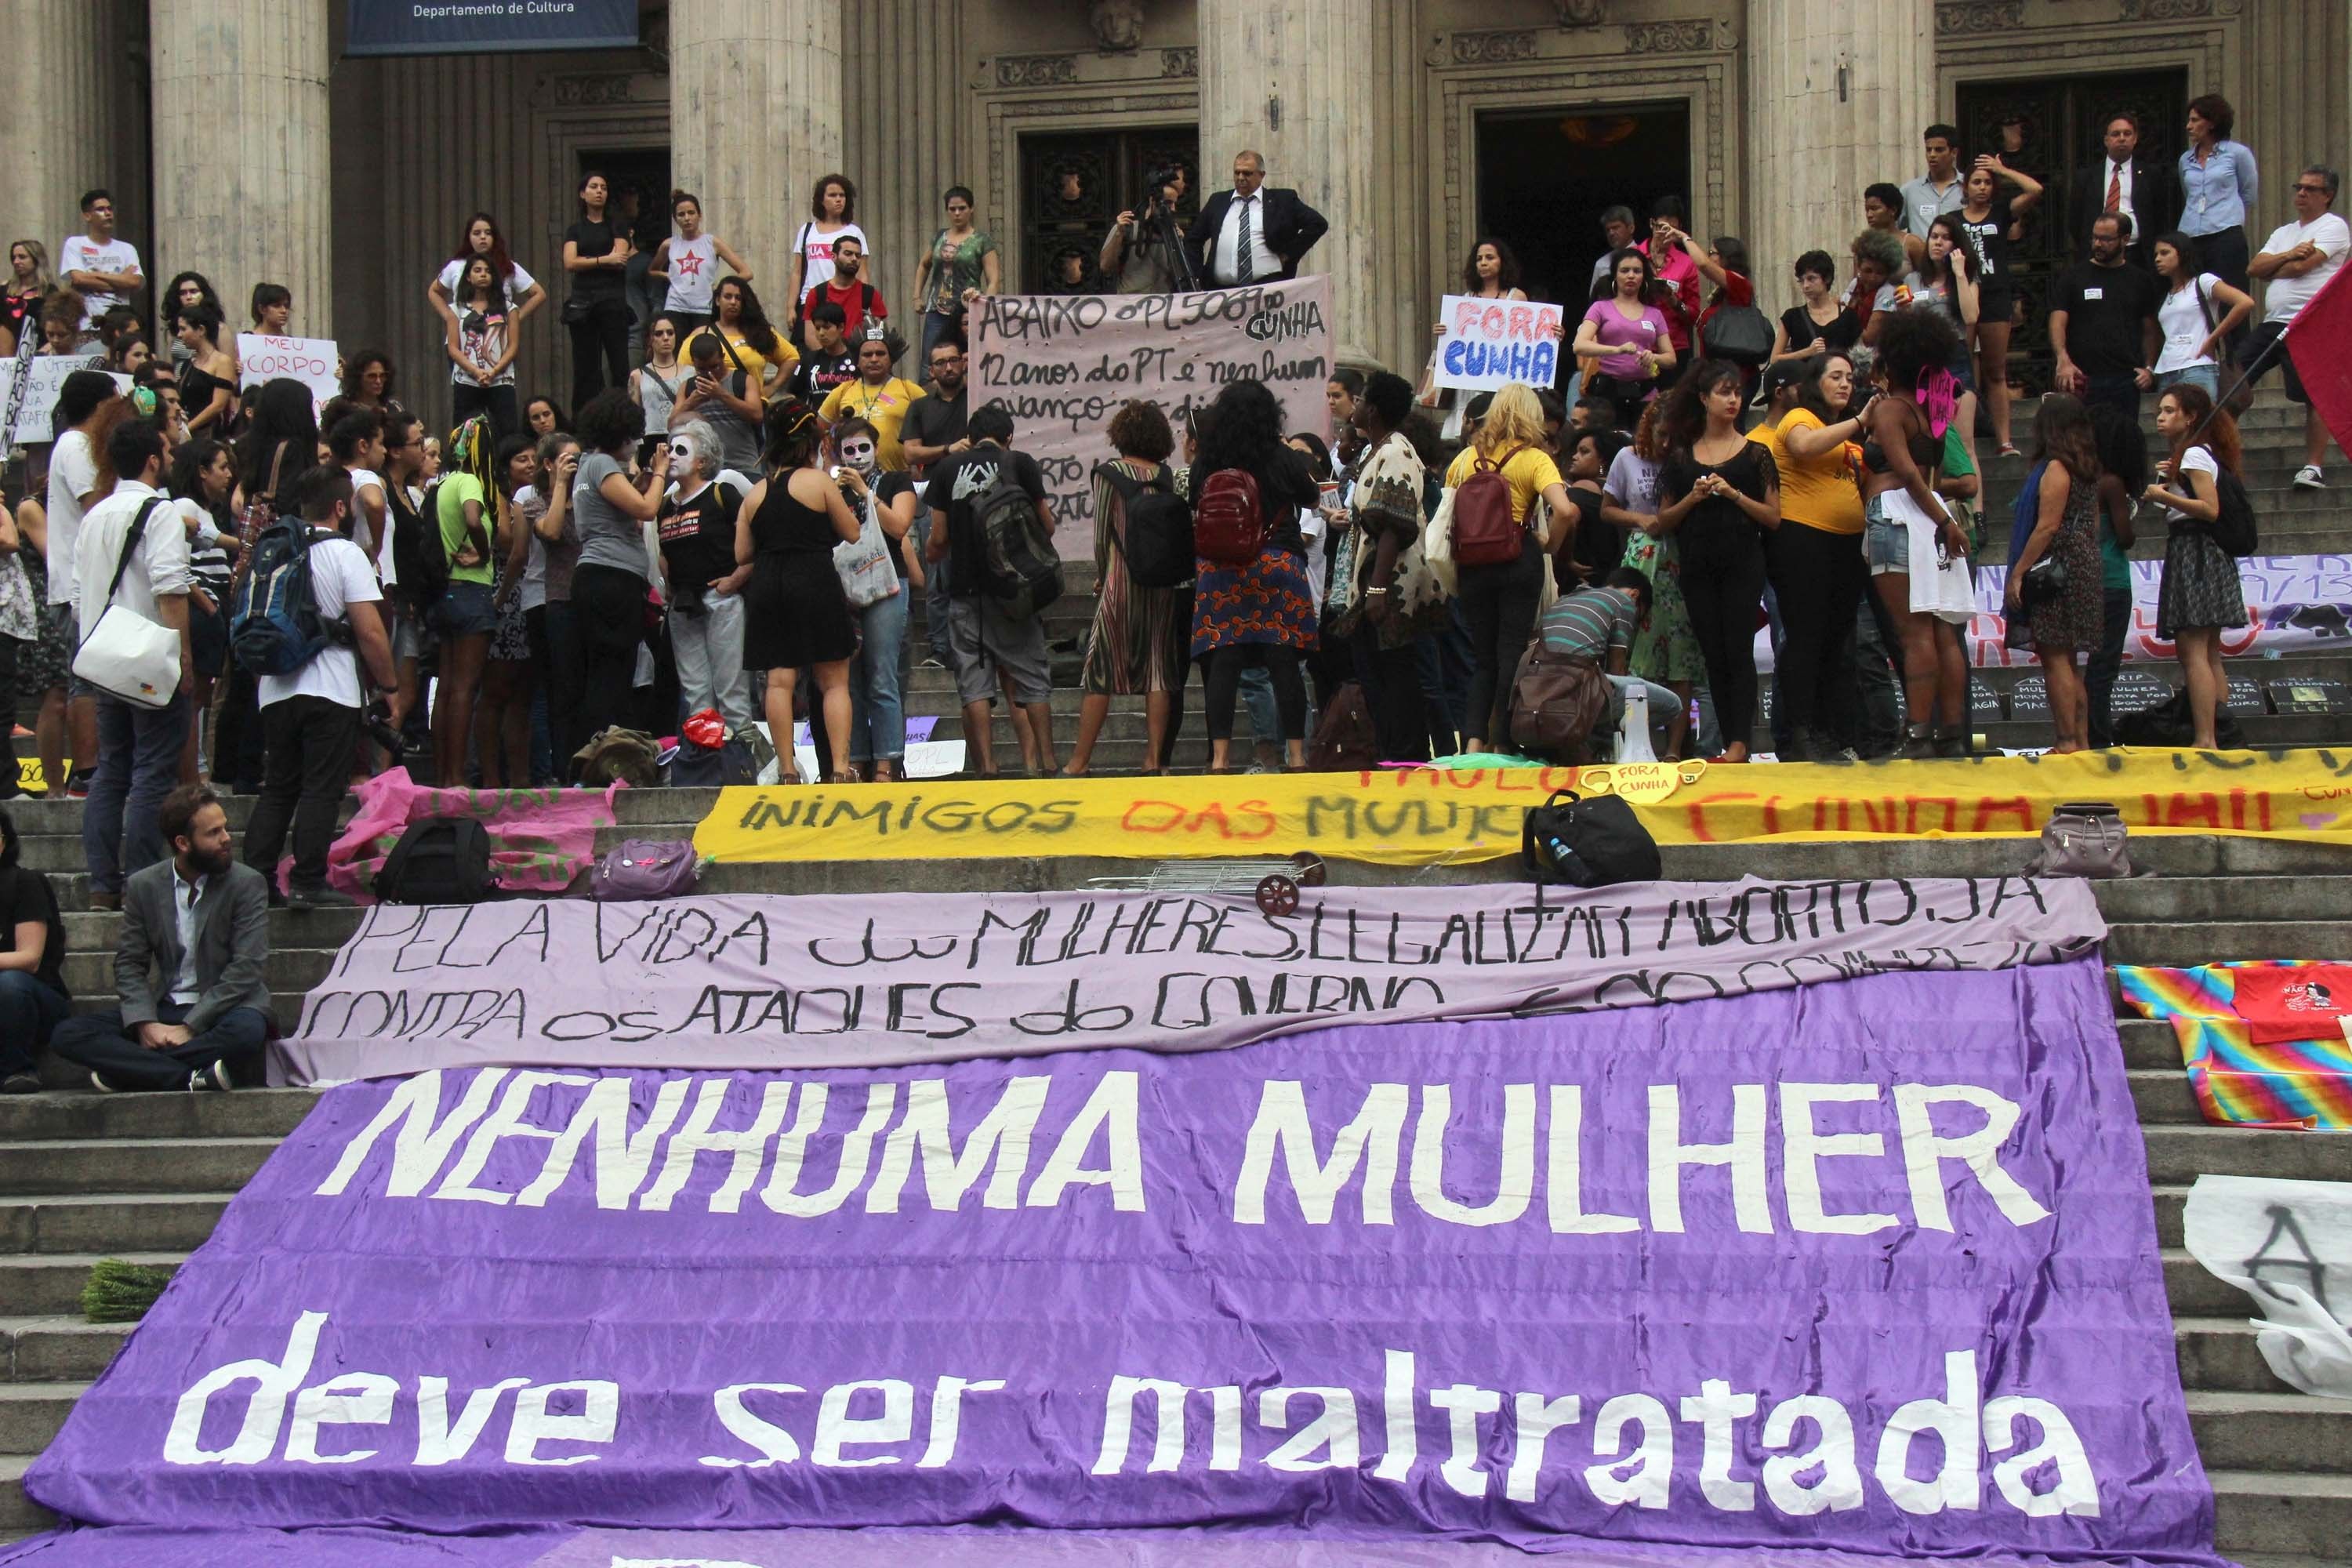 Protesto contra o projeto de lei 5069, de autoria do deputado Eduardo Cunha, no centro do Rio de Janeiro / Jose Lucena/Futura Press/Folhapress